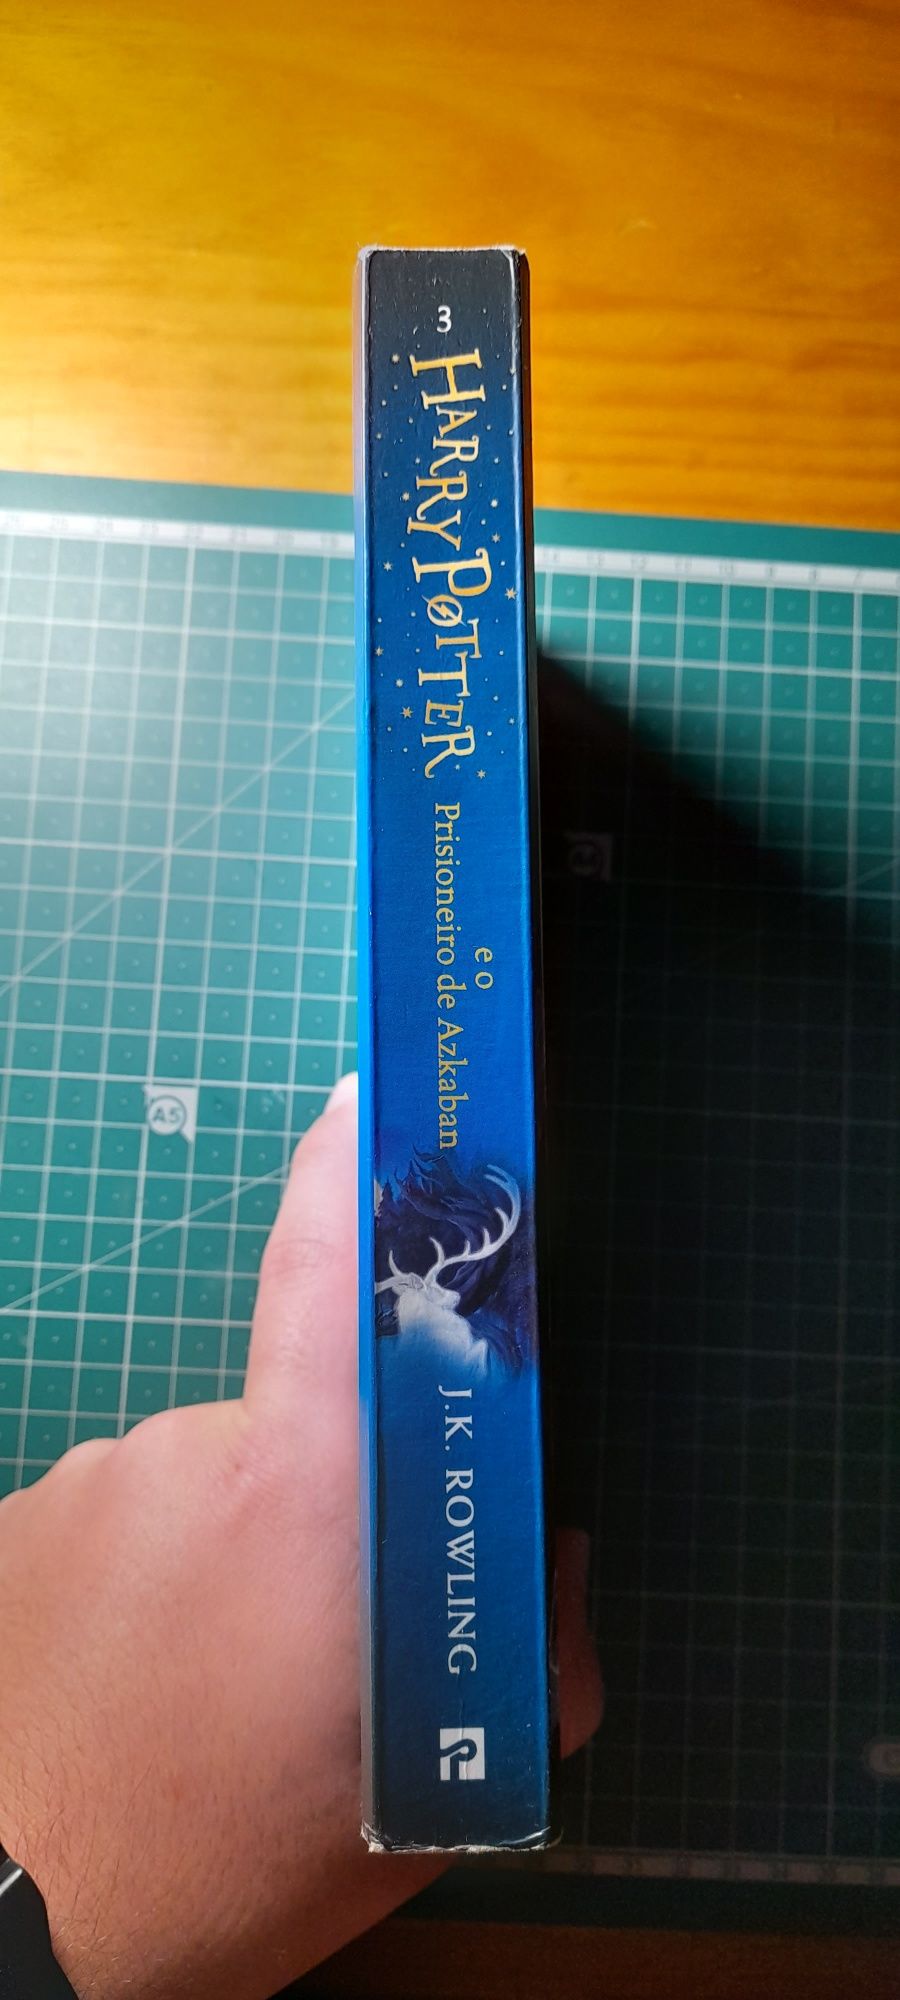 Livro "Harry Potter e o prisioneiro de Azkaban"